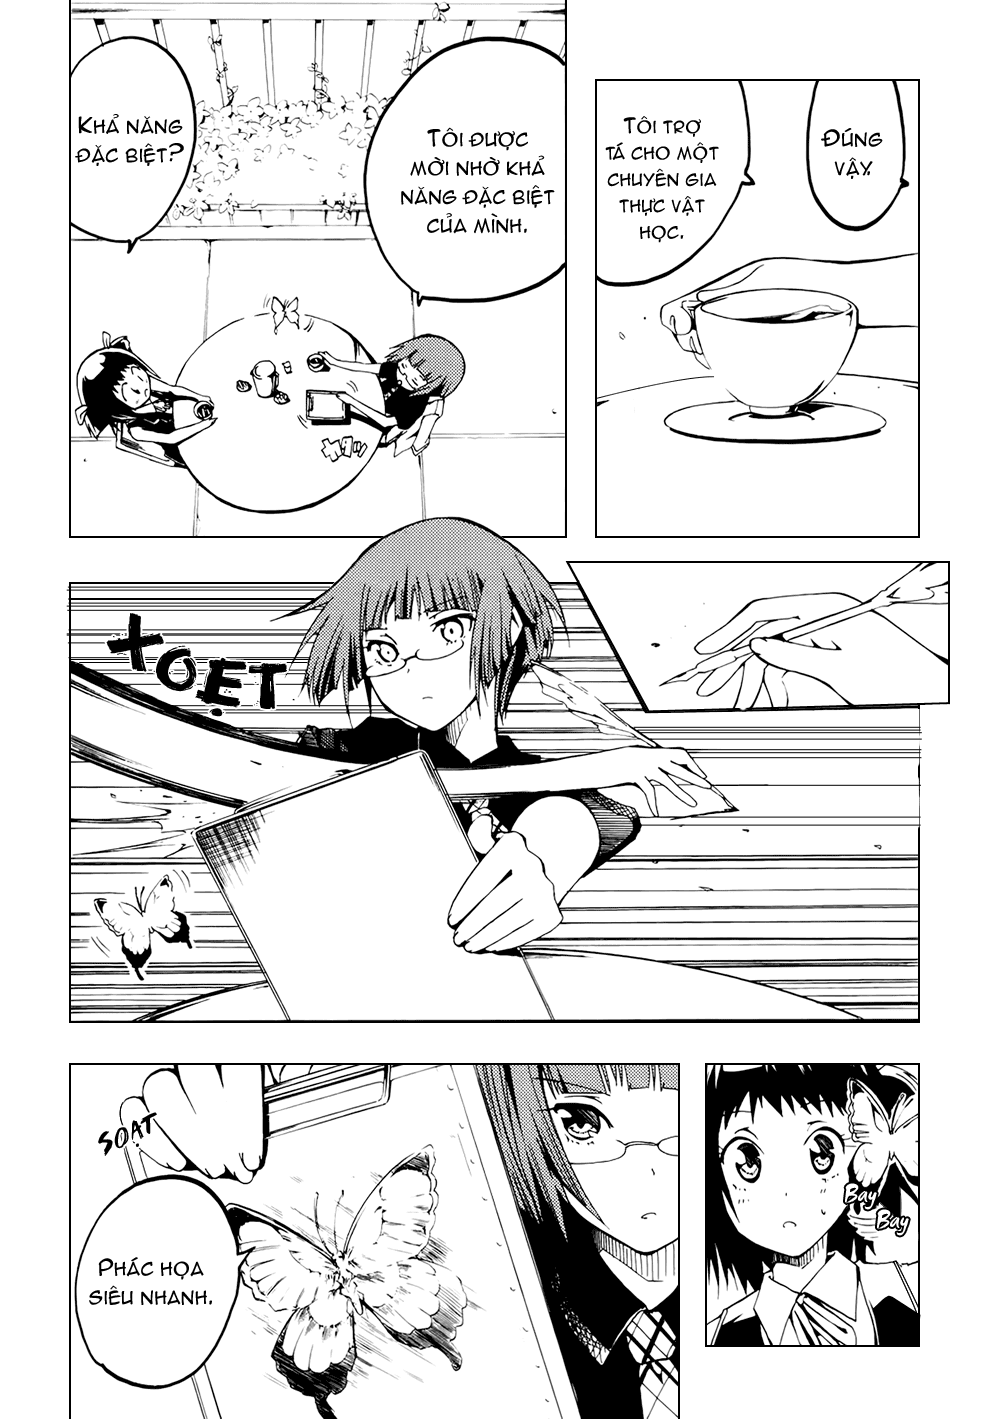 [Manga]: Esprit ESPRIT_01_106